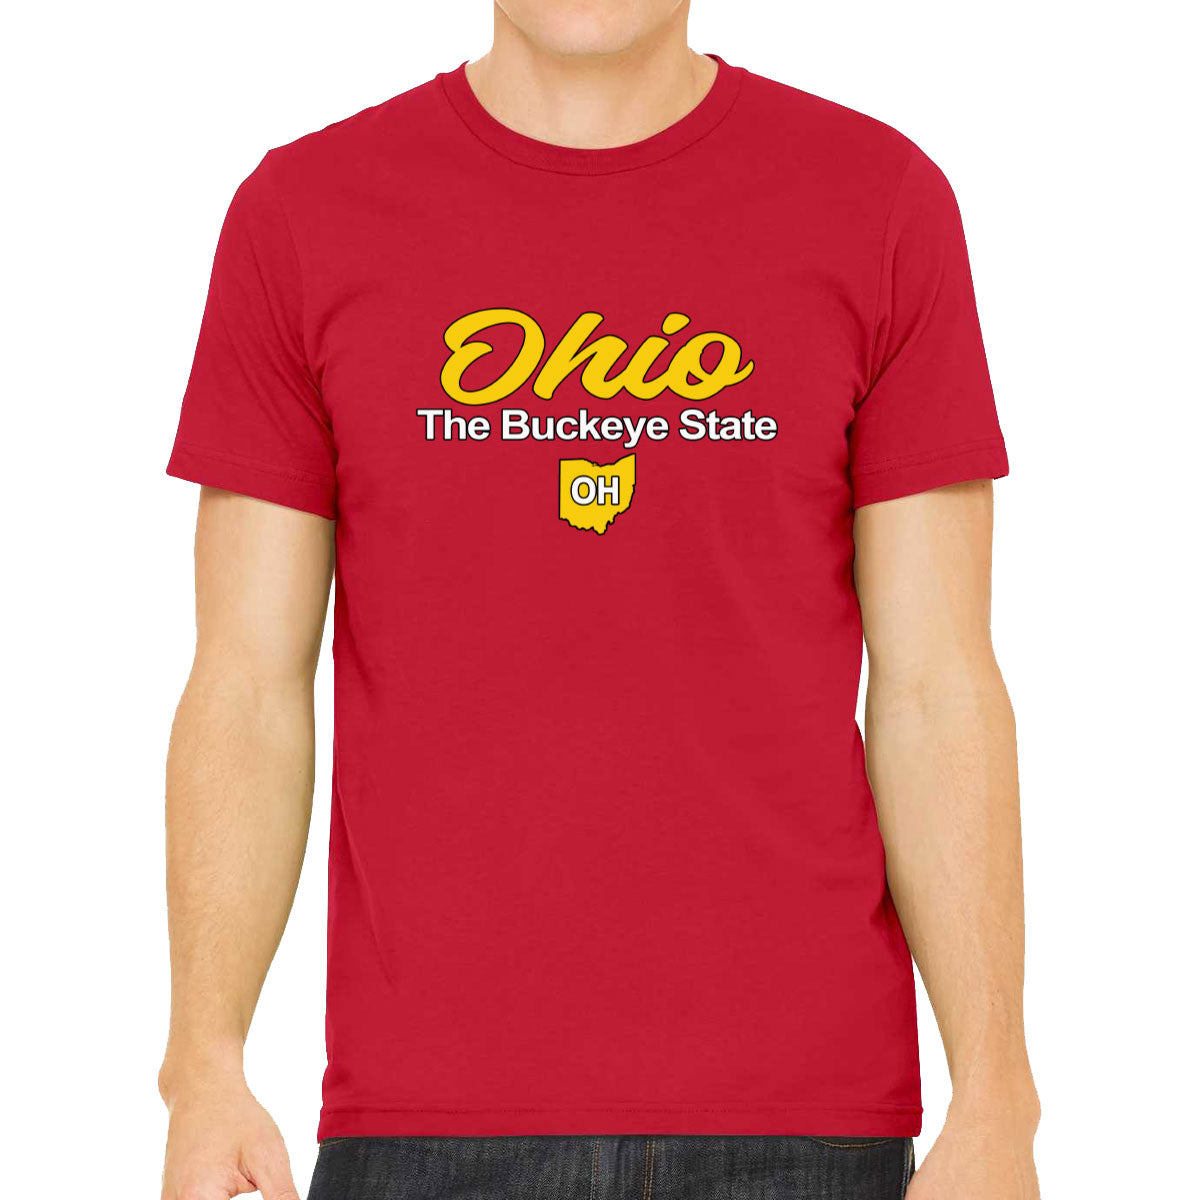 Ohio The Buckeye State Men's T-shirt